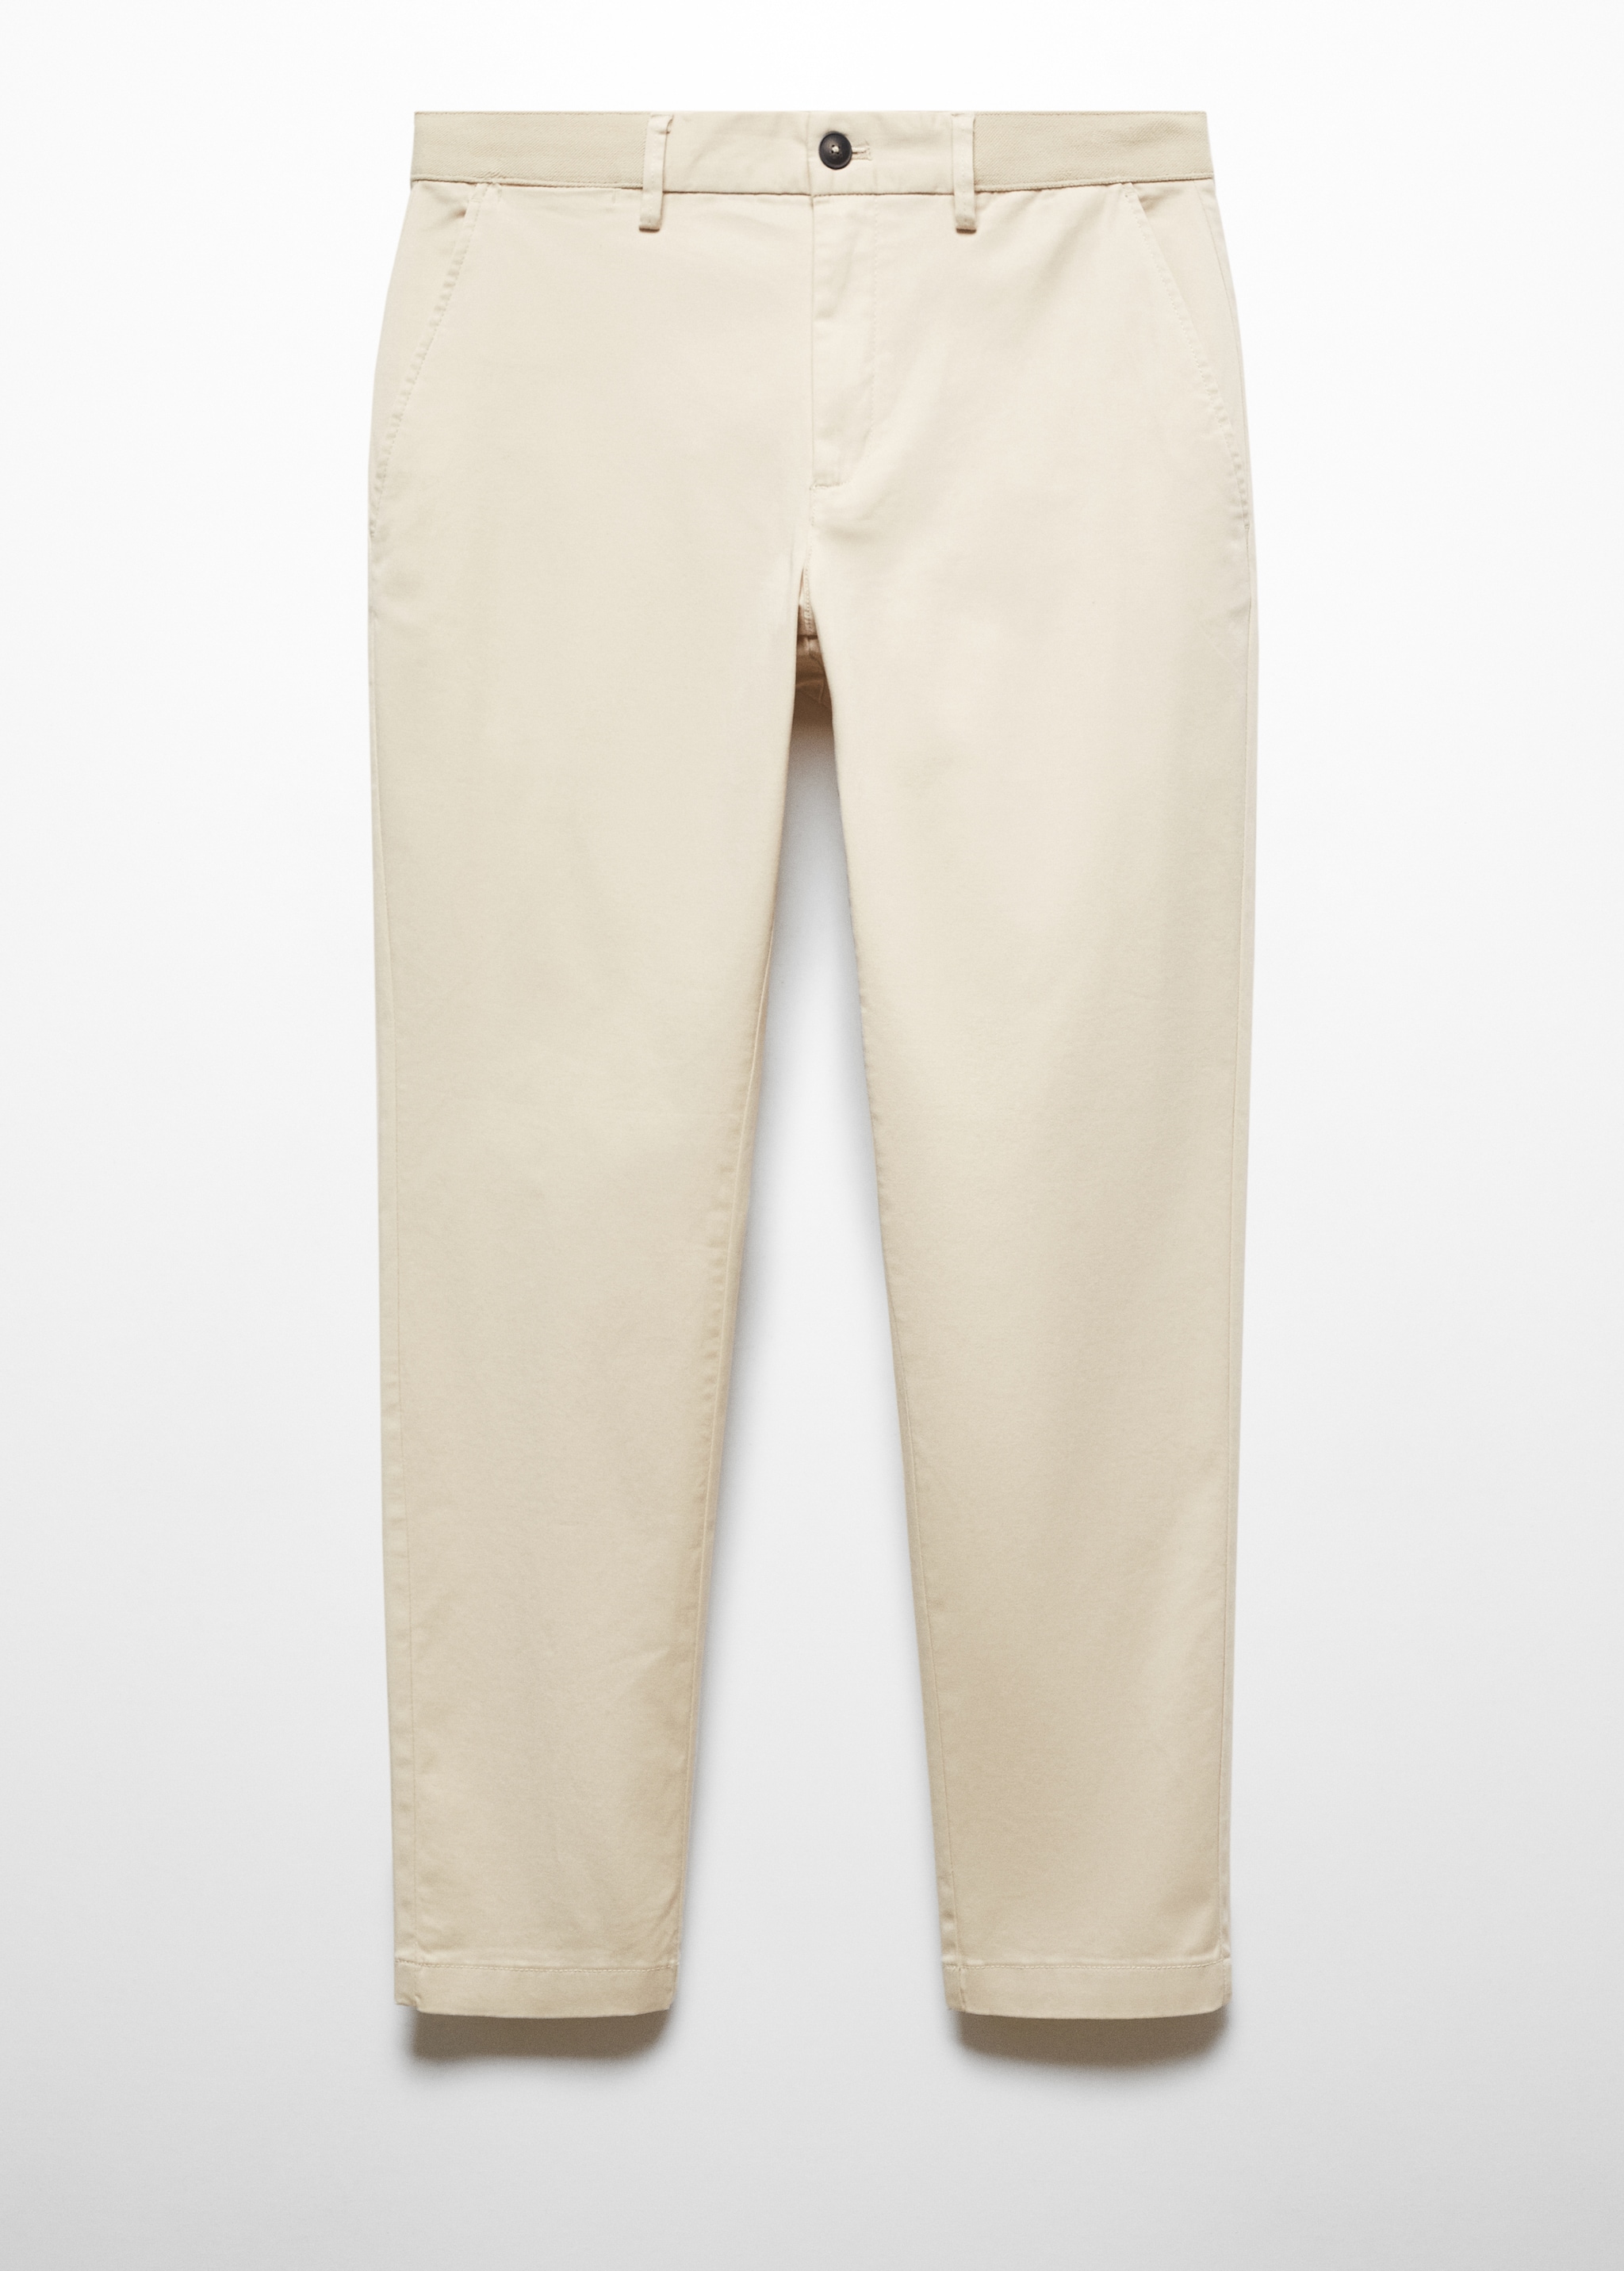 Укороченные брюки tapered из хлопка - Изделие без модели